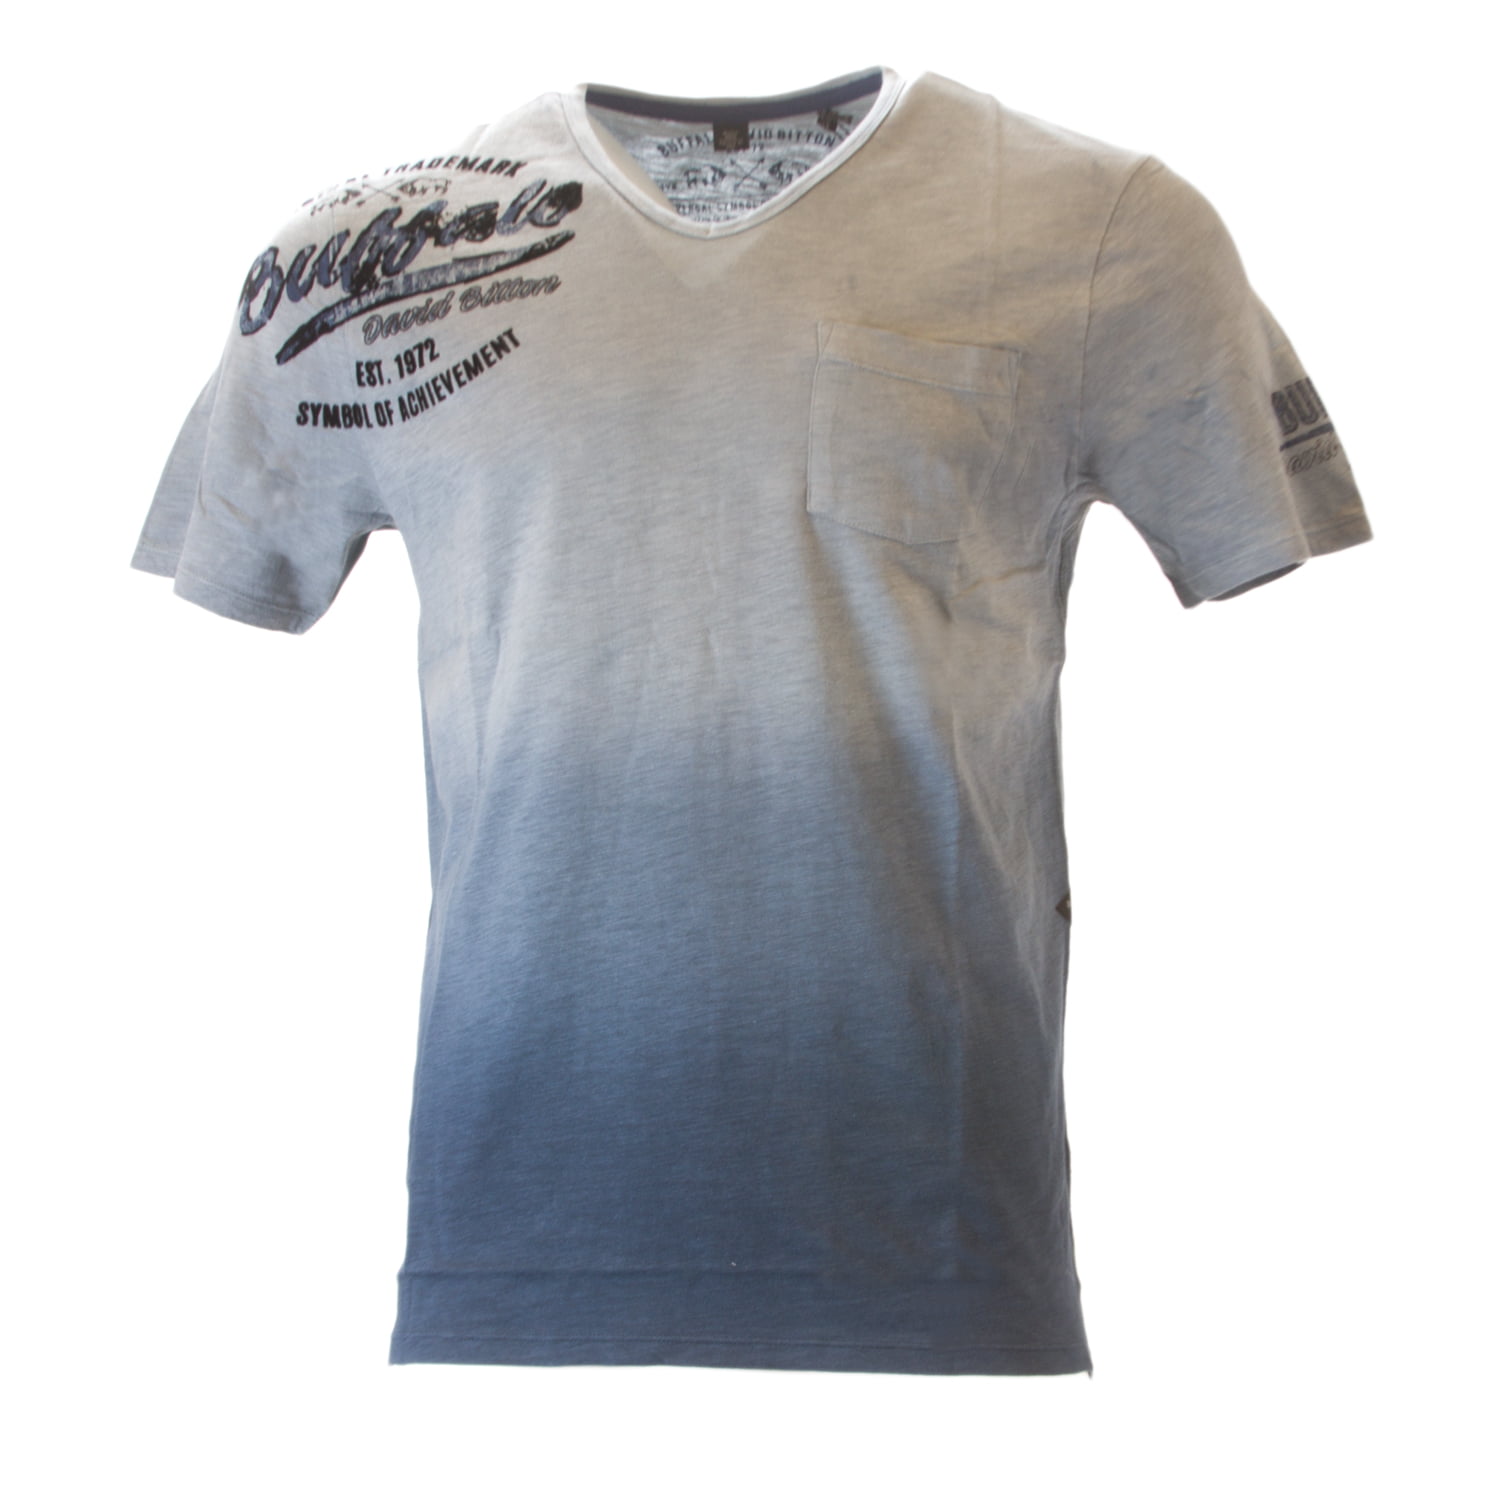 New Buffalo David Bitton Homme Coton Savino shirt Délavé Mirage fabricants Standard prix de détail $69.00 